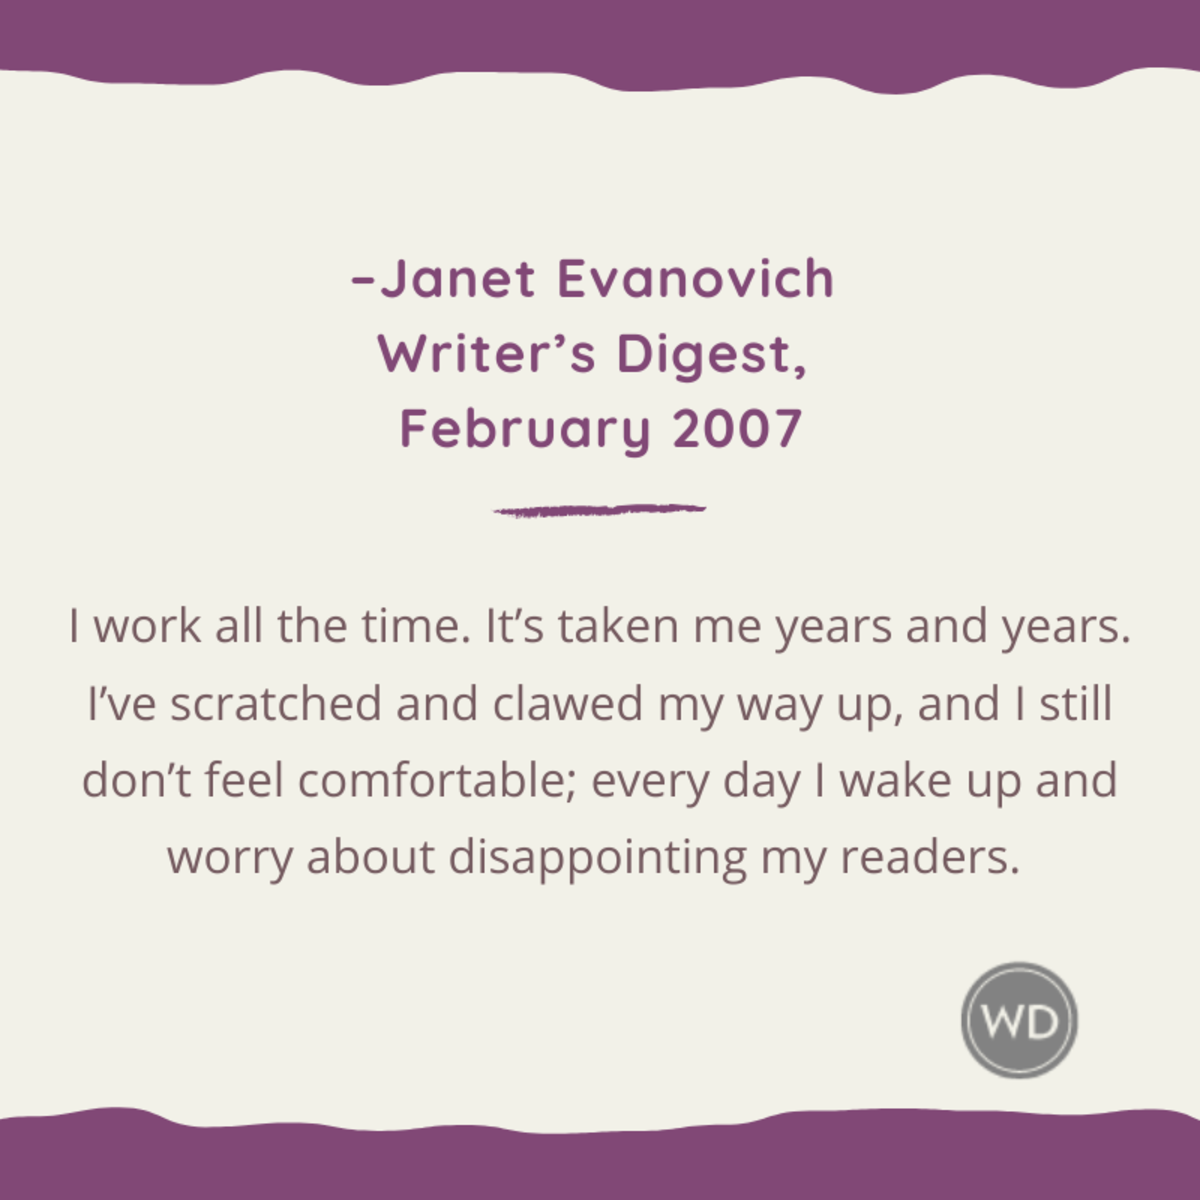 Janet Evanovich quotes